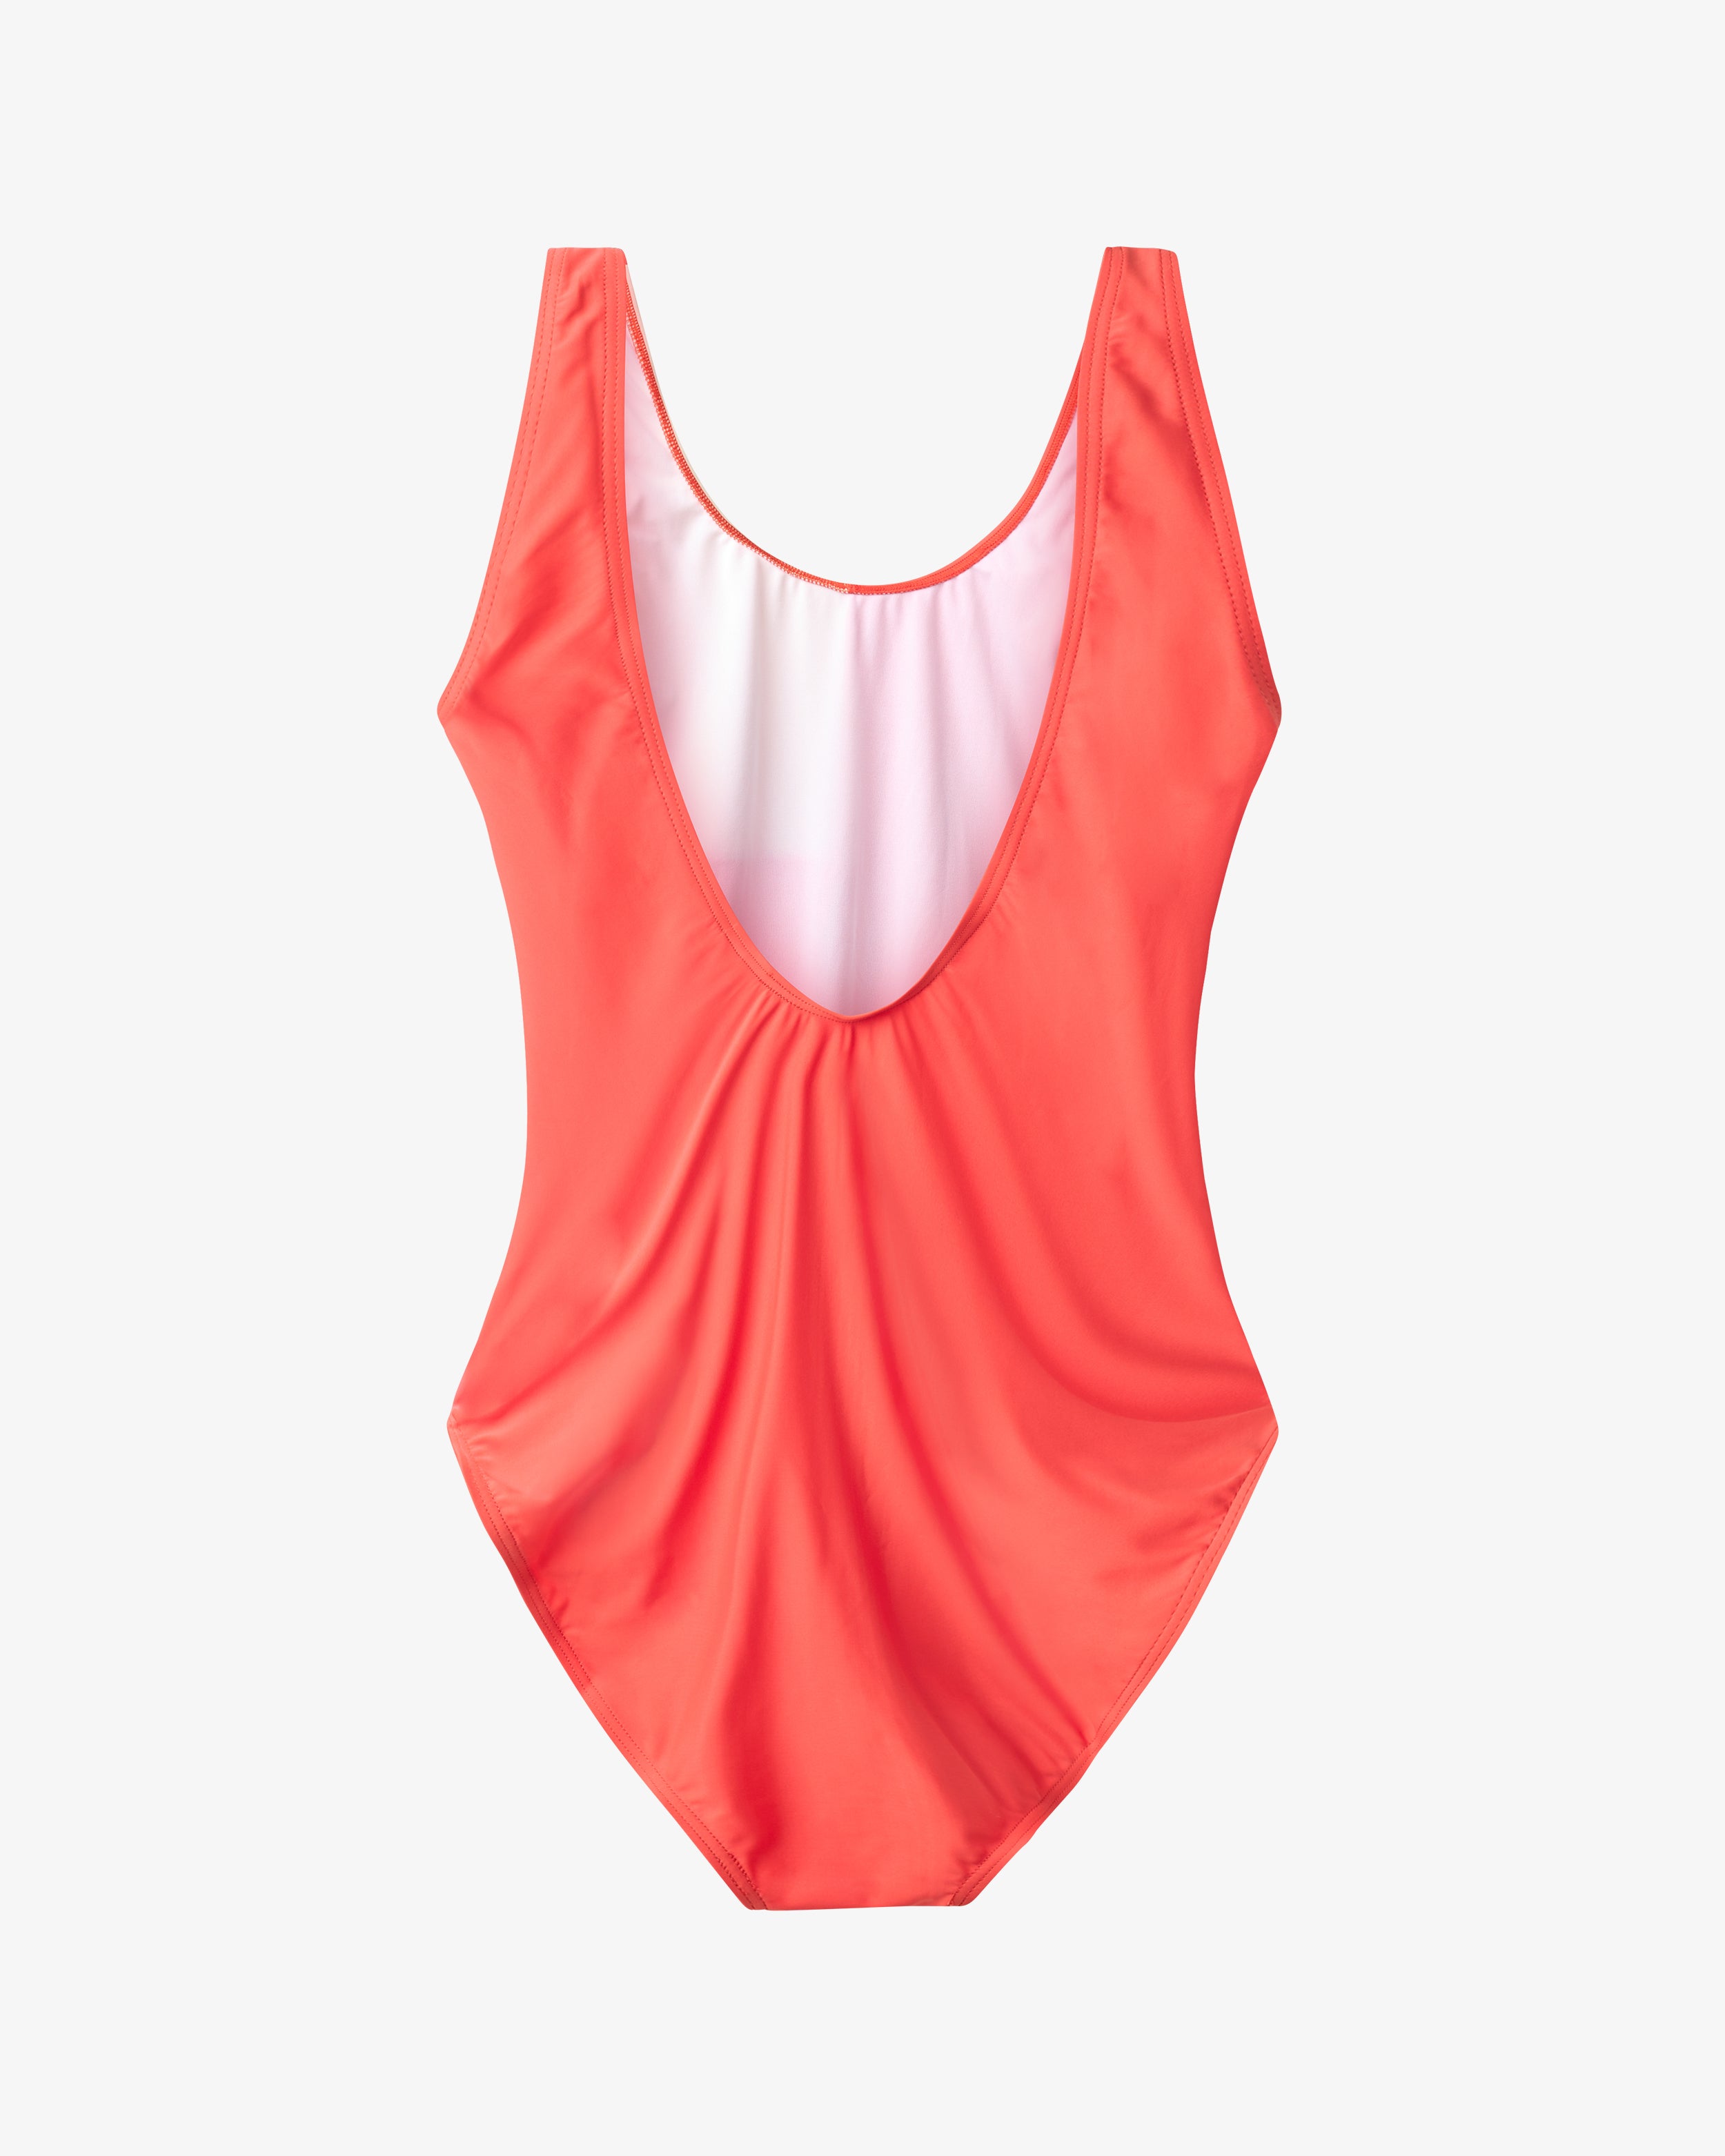 Møn Colorblock Swim Suit - Pumpkin/Light Peach